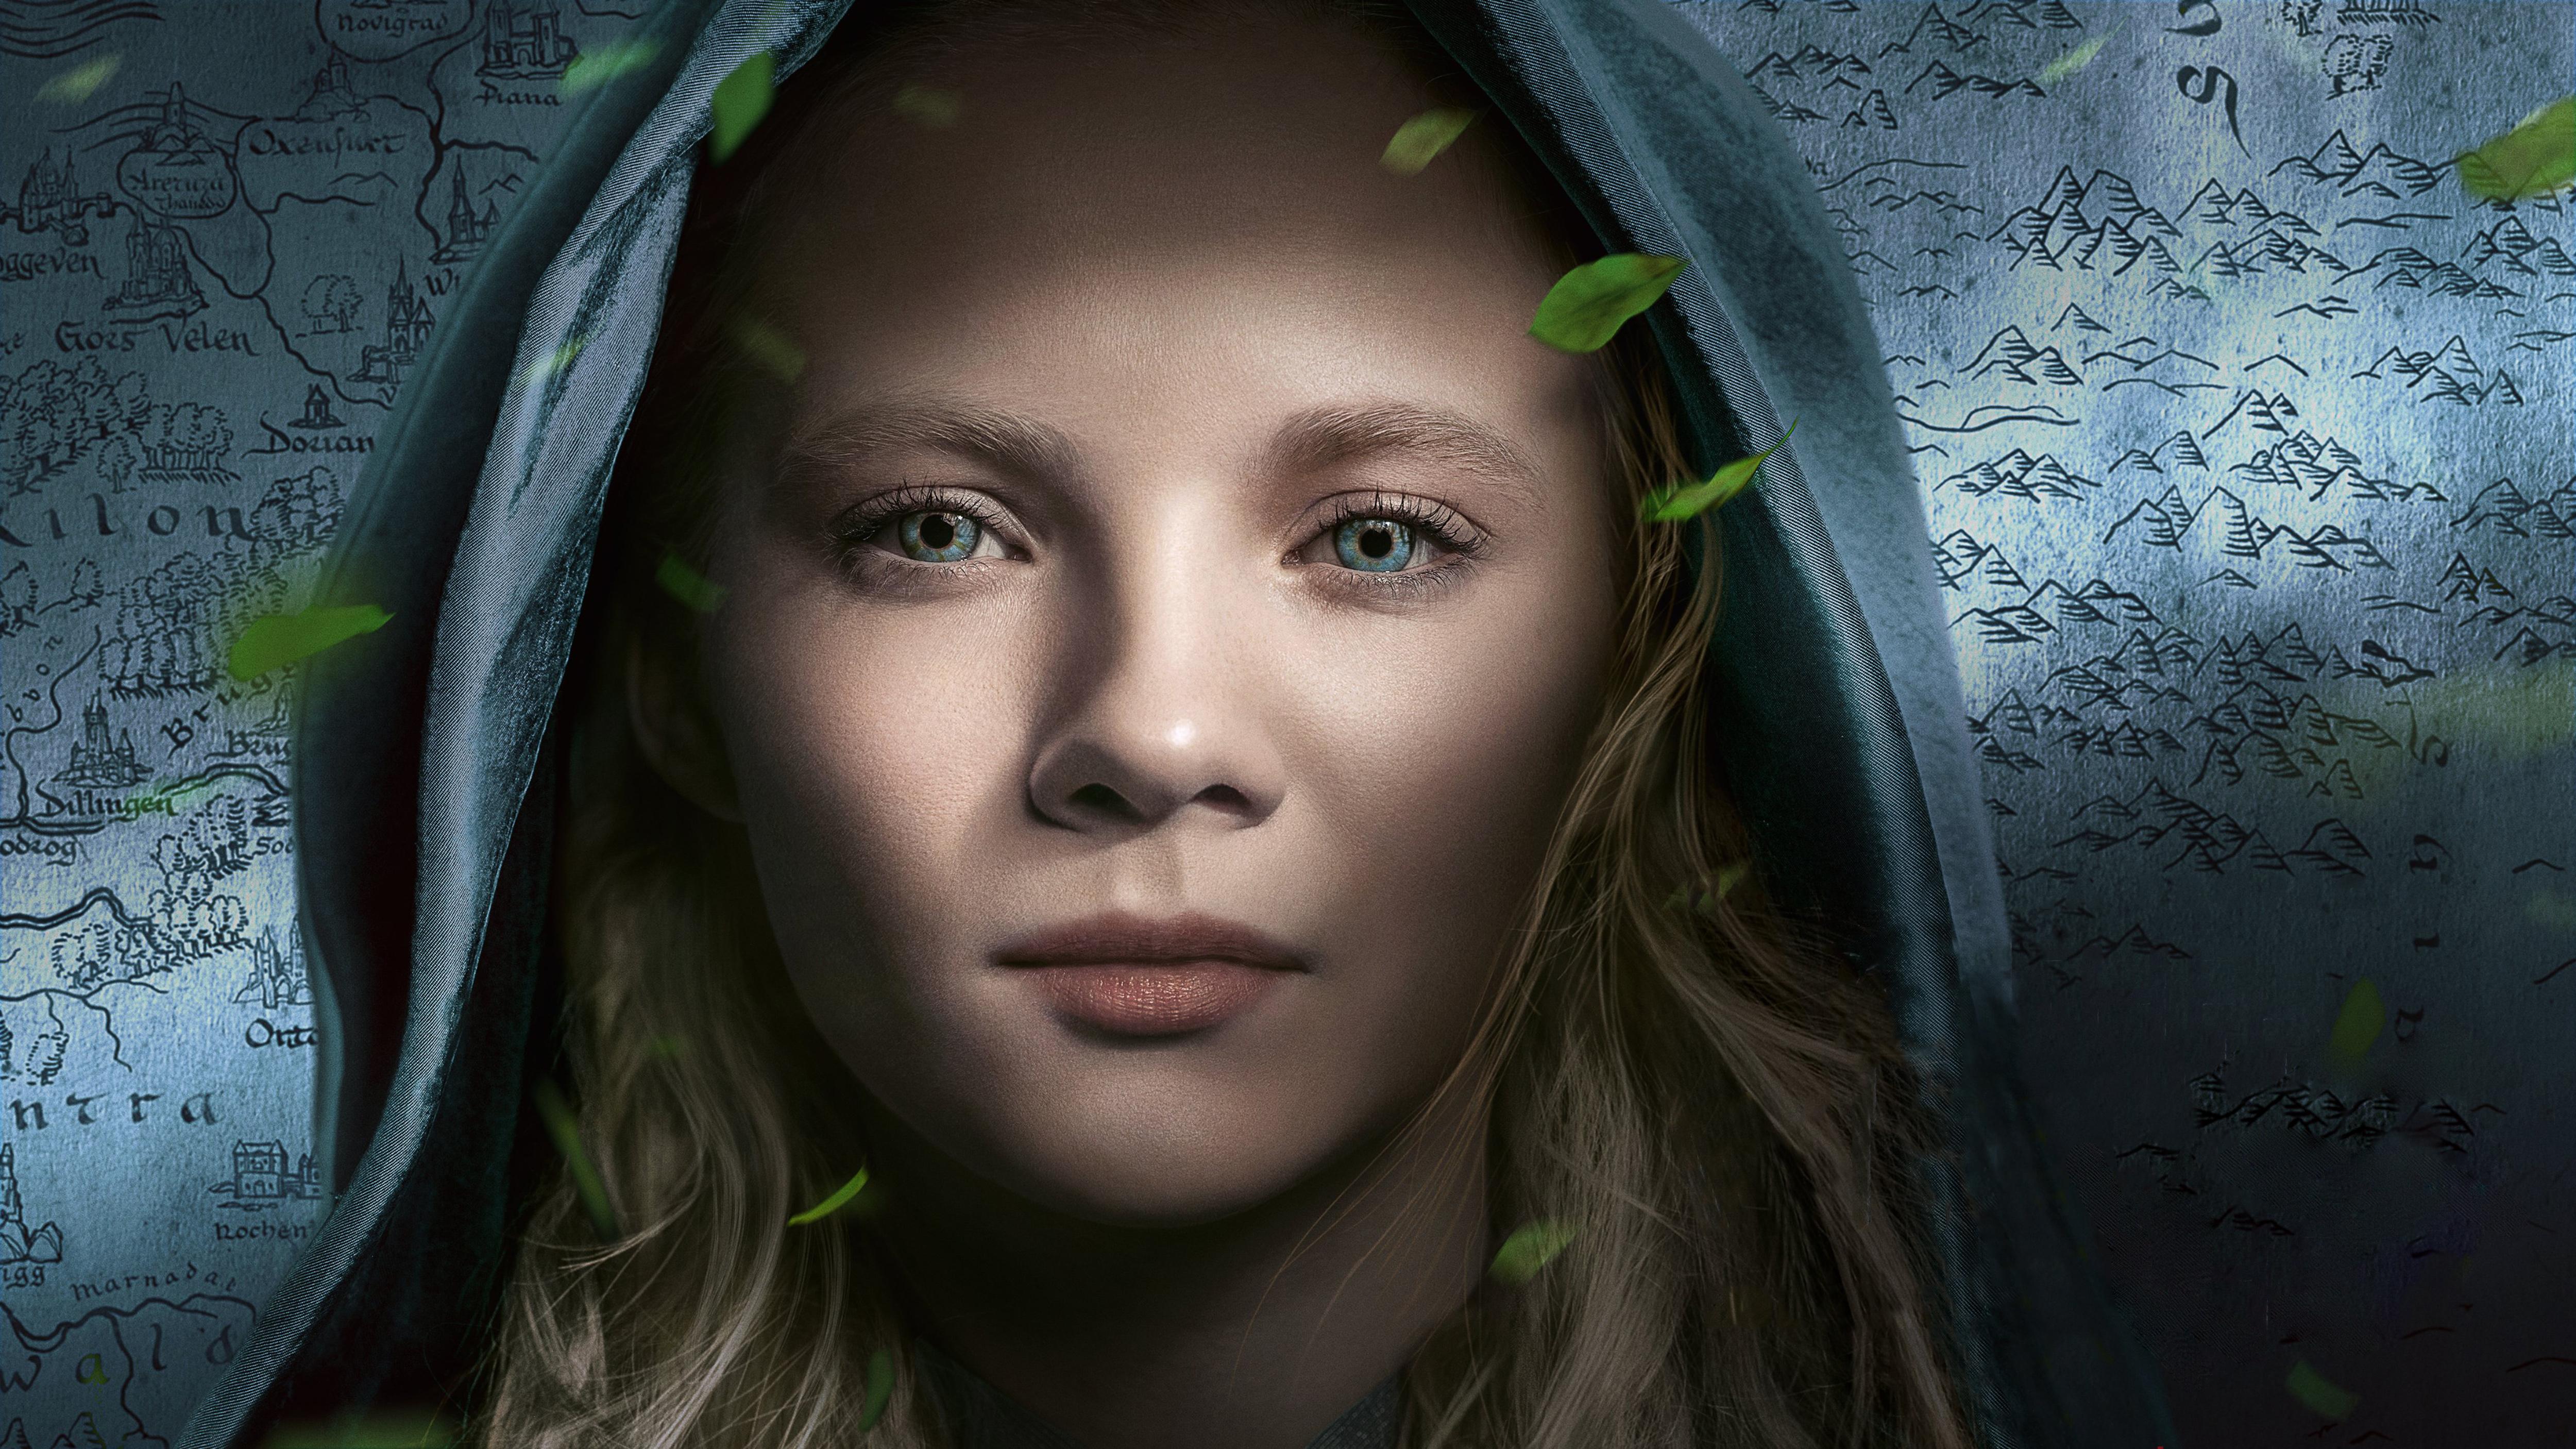 Ciri Netflix The Witcher Poster Wallpaper, HD TV Series 4K